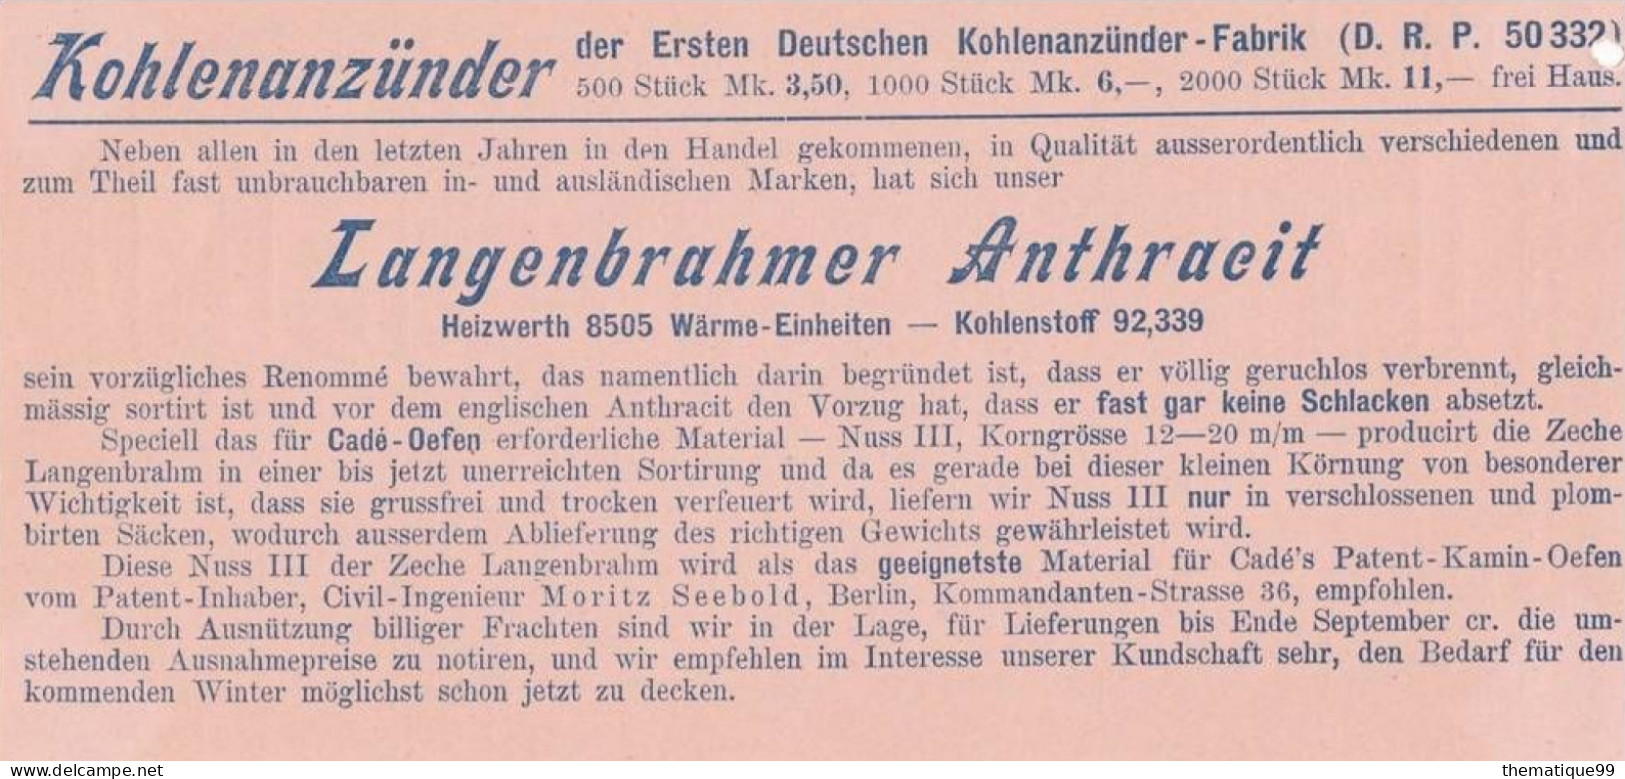 Entier postal poste locale de Berlin provenant d'un carnet avec publicités du carnet (1897): bois charbon coke chauffage